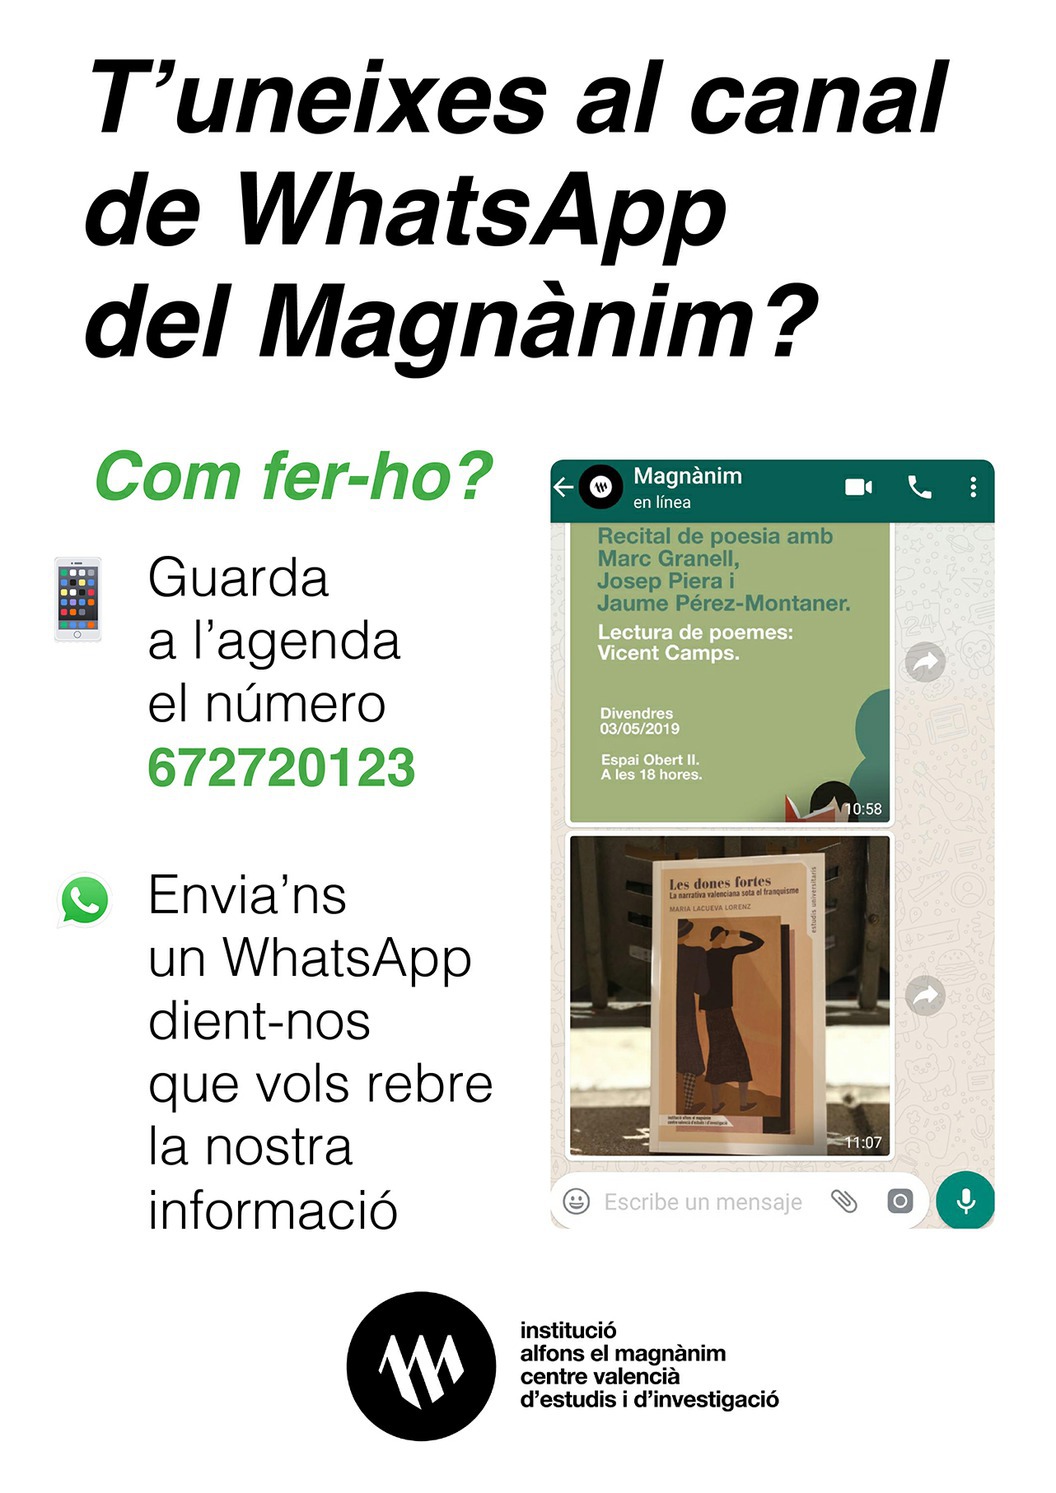 El Magnànim estrena un canal de difusión para WhatsApp